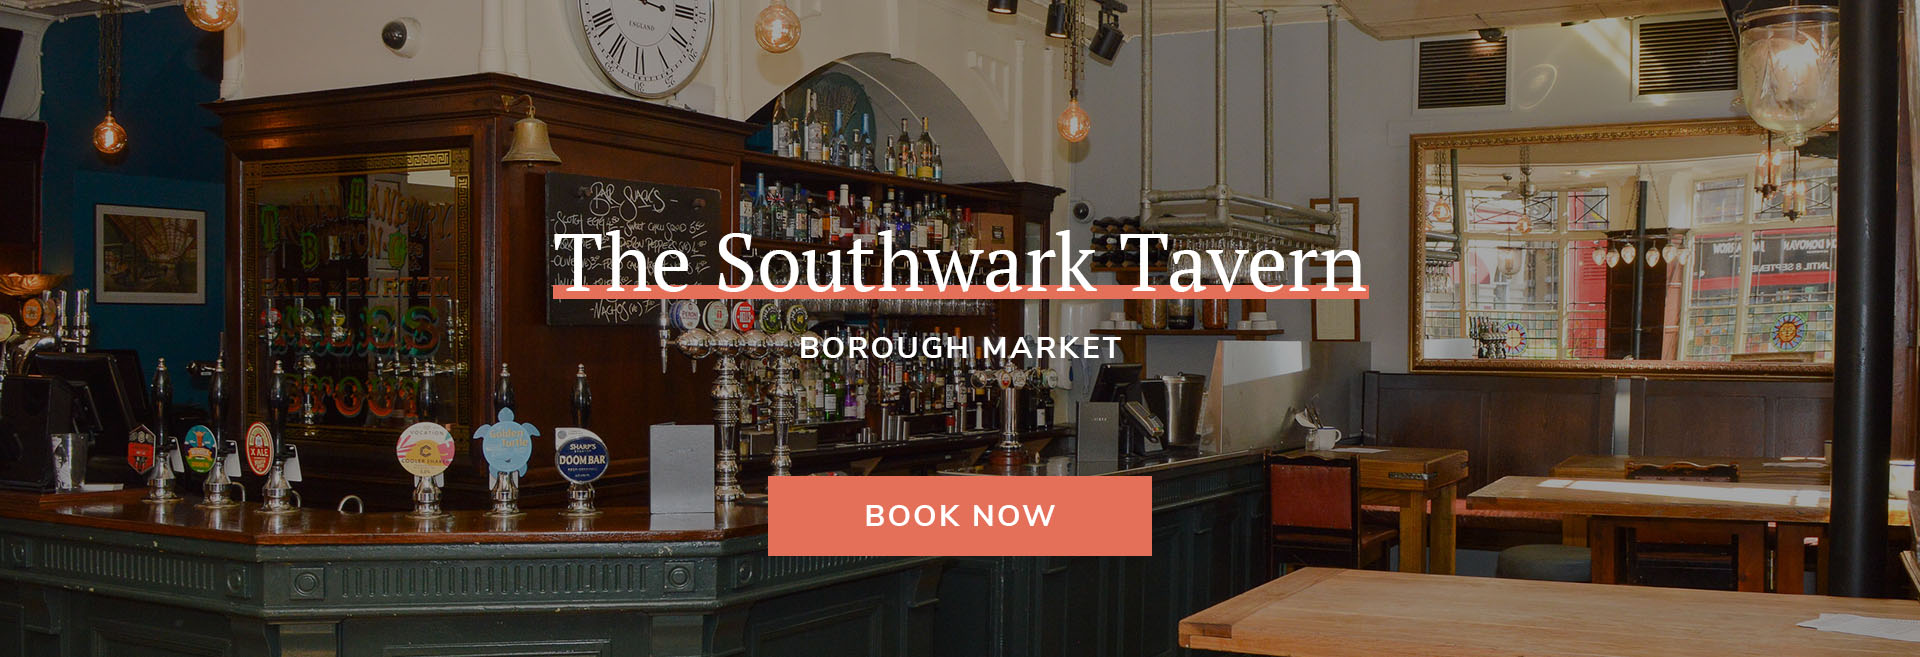 The Southwark Tavern Banner 2